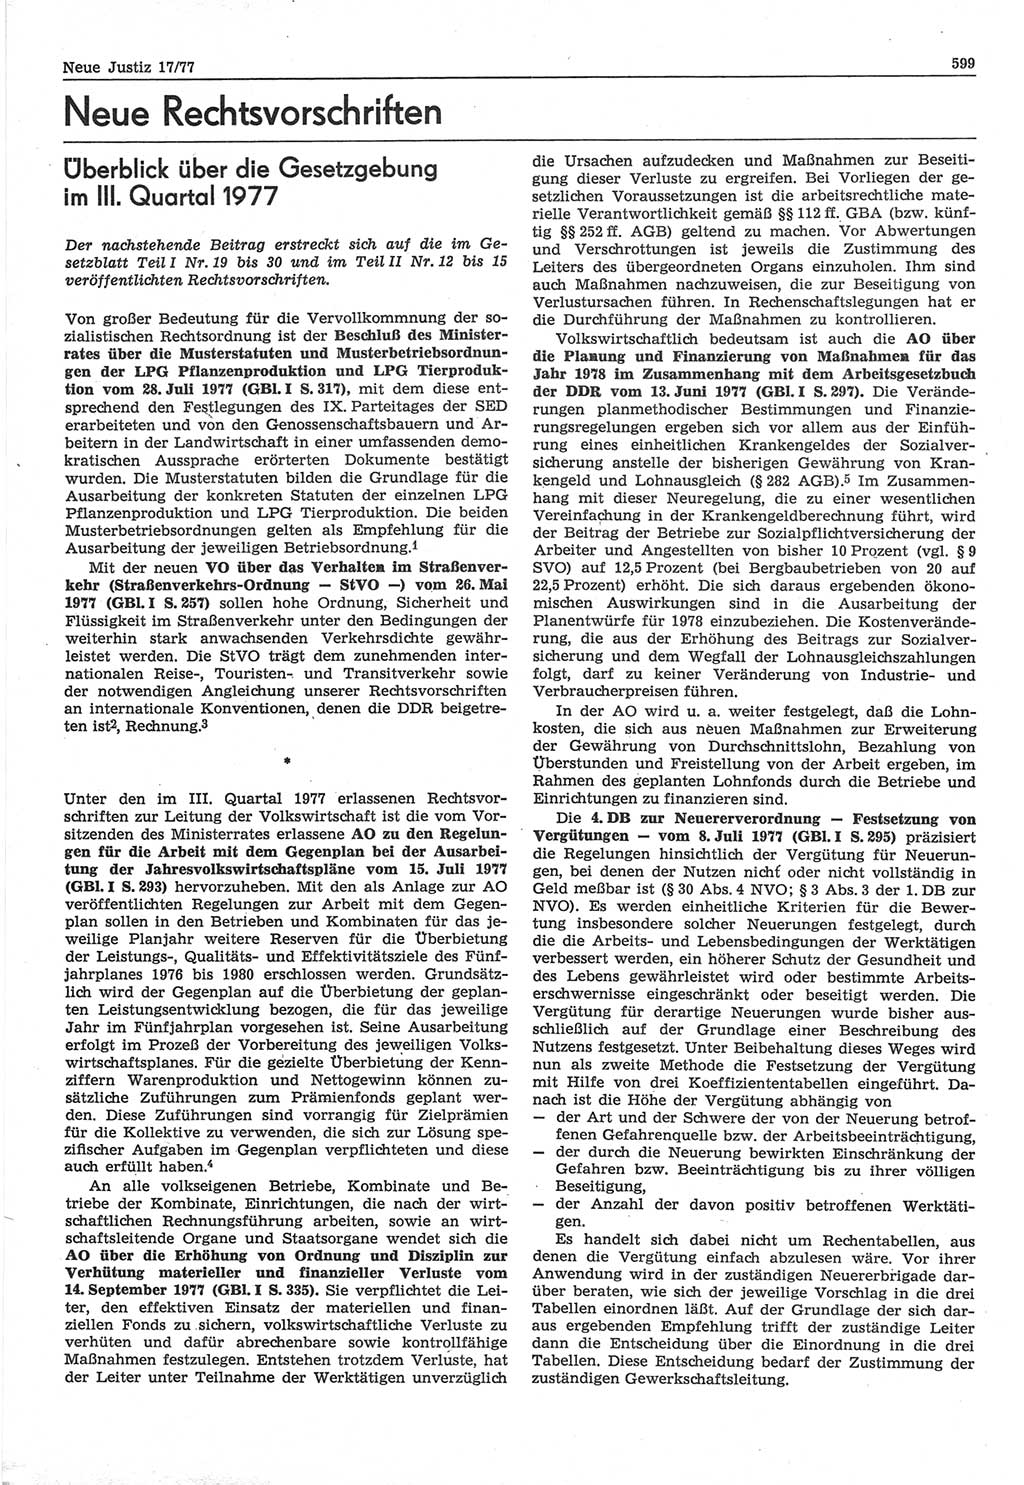 Neue Justiz (NJ), Zeitschrift für Recht und Rechtswissenschaft-Zeitschrift, sozialistisches Recht und Gesetzlichkeit, 31. Jahrgang 1977, Seite 599 (NJ DDR 1977, S. 599)